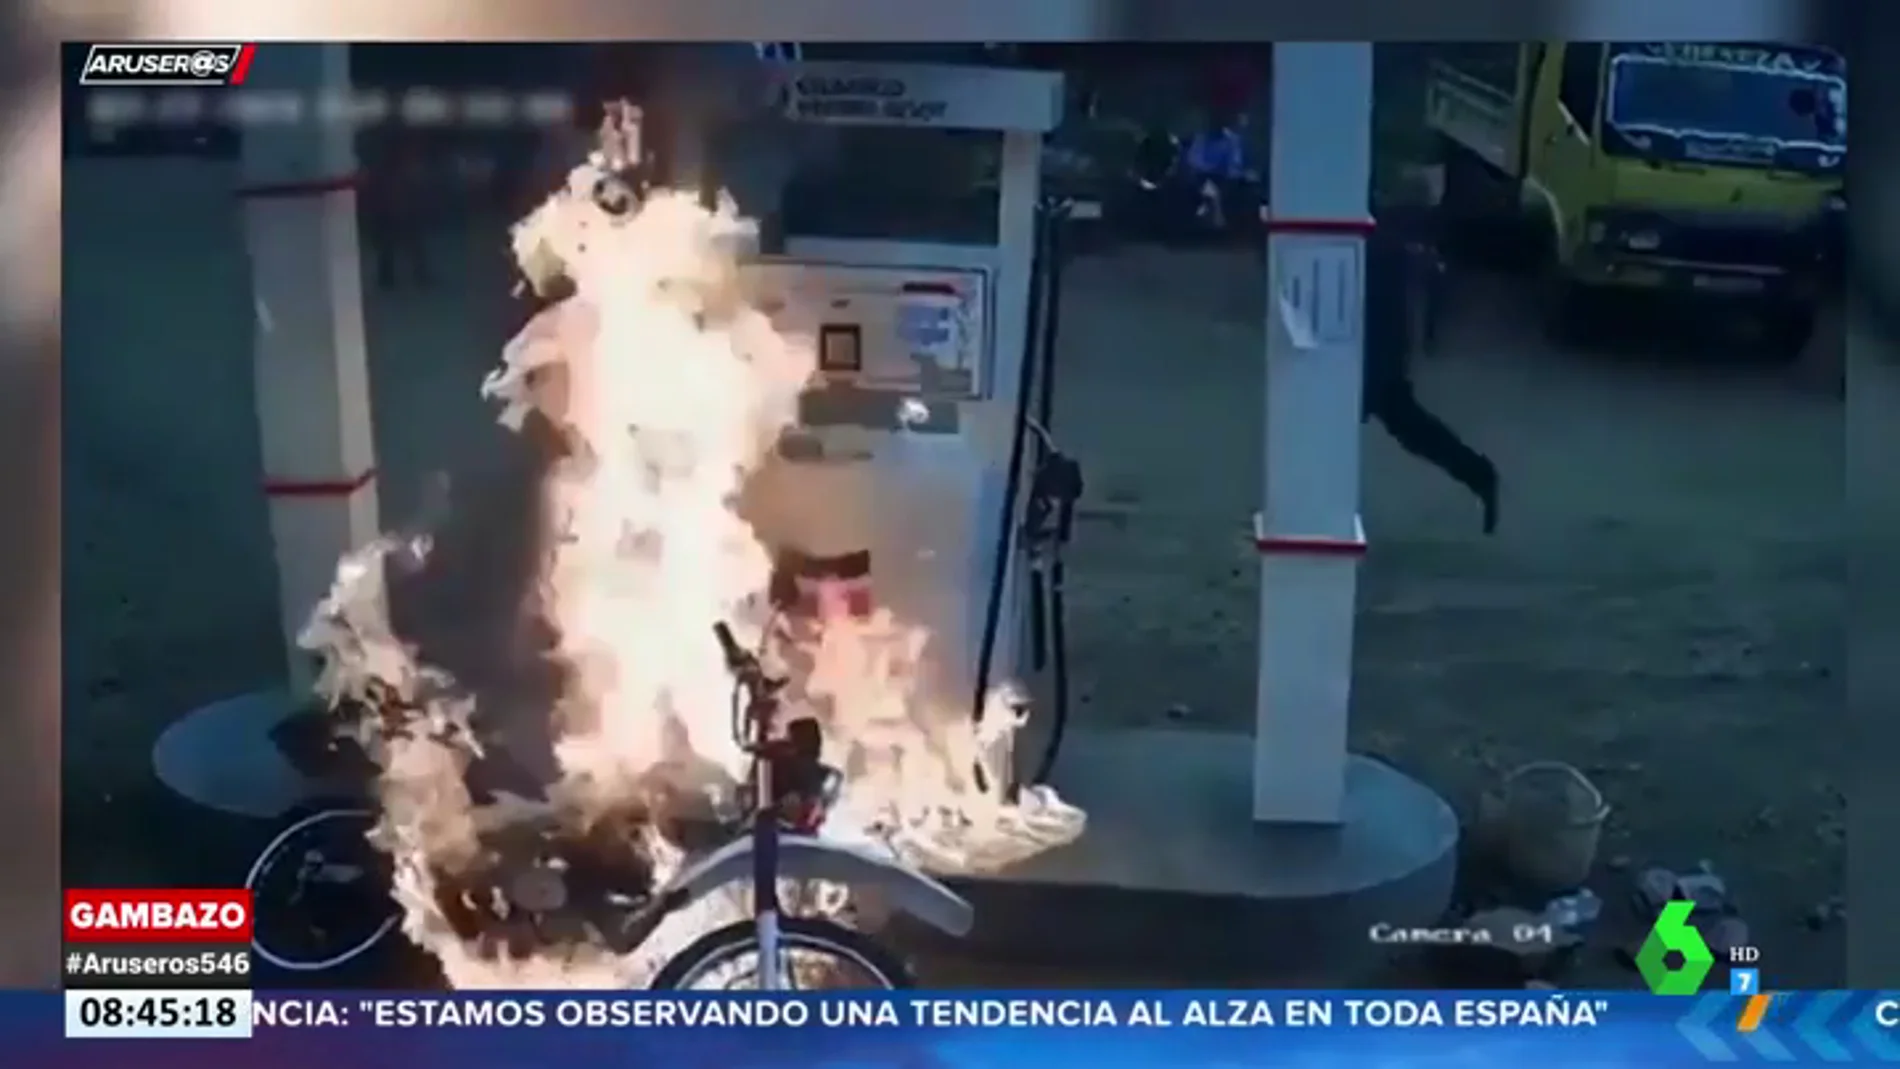 El momento en el que una moto arde en una gasolinera cuando sus dueños estaban repostando